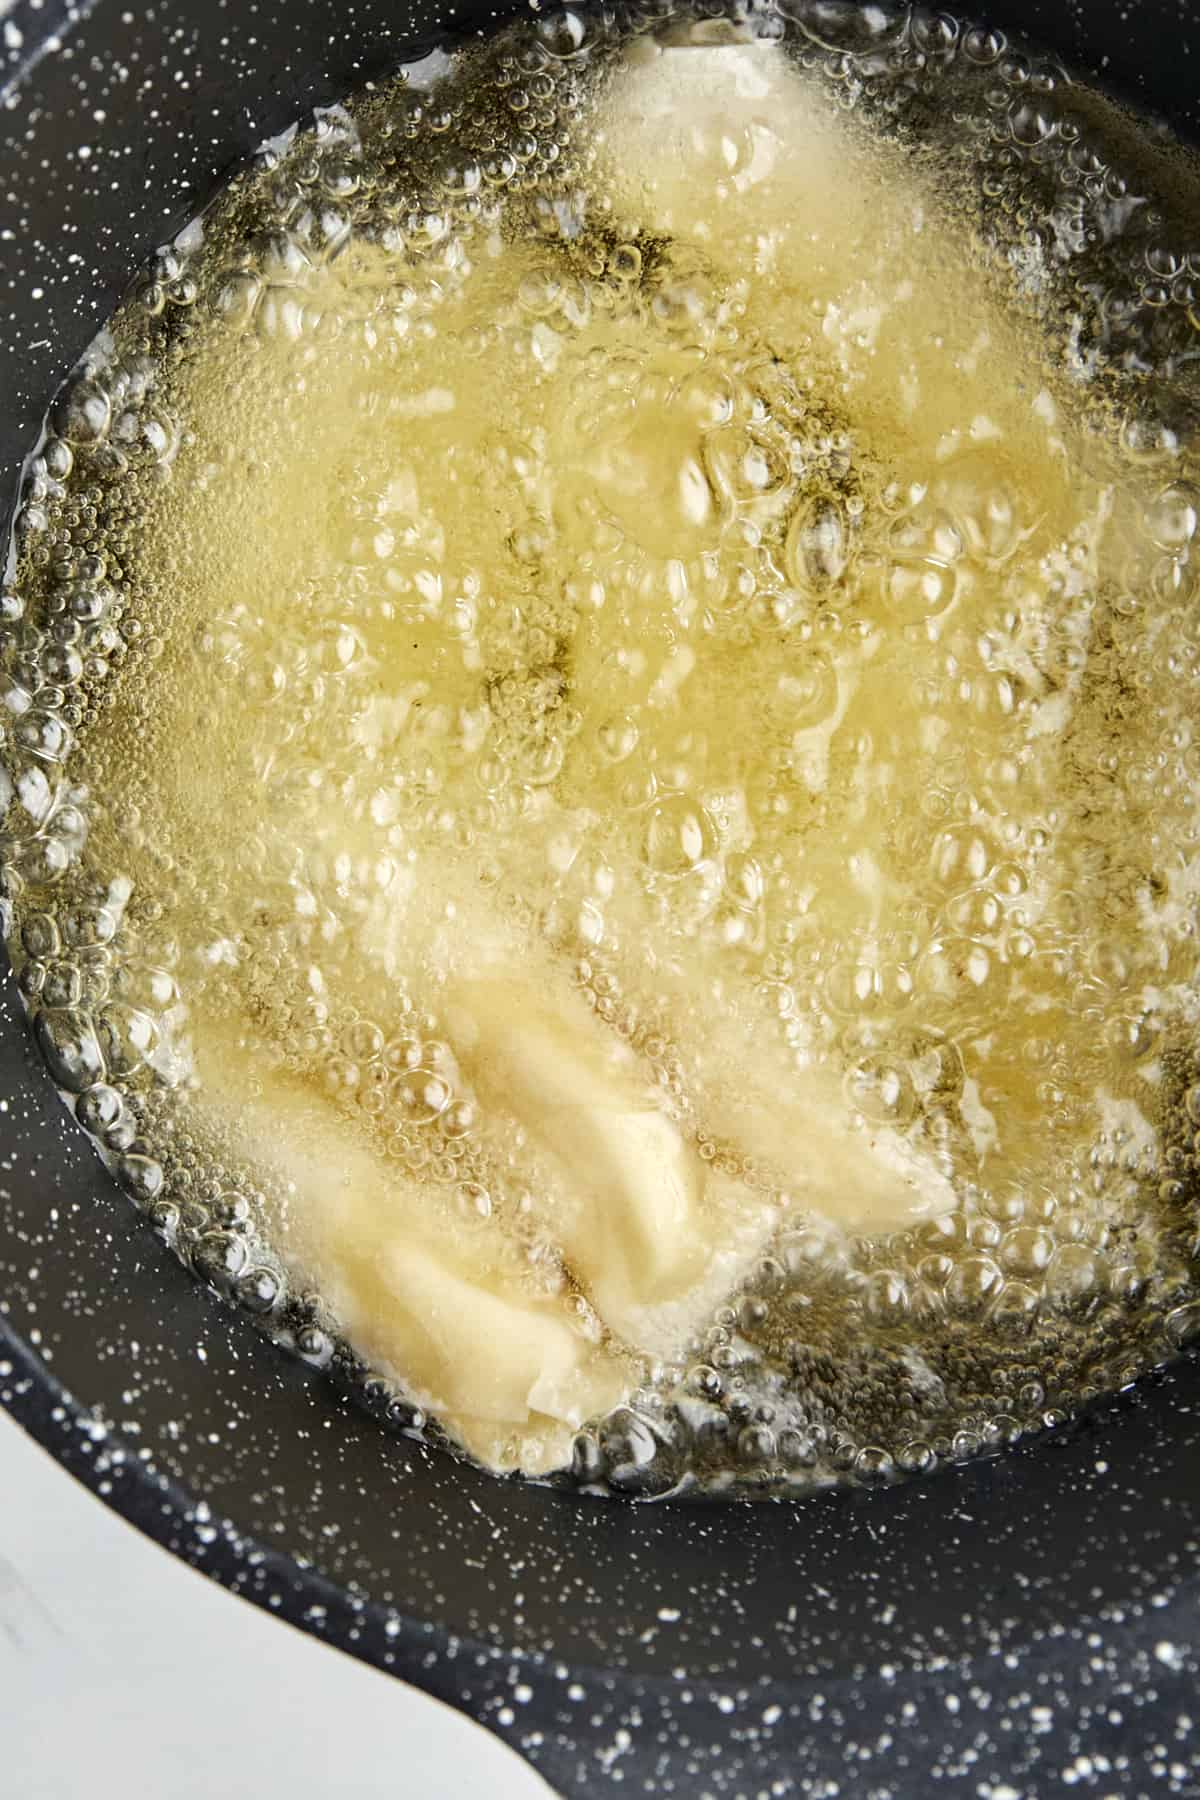 feta rolls frying in oil